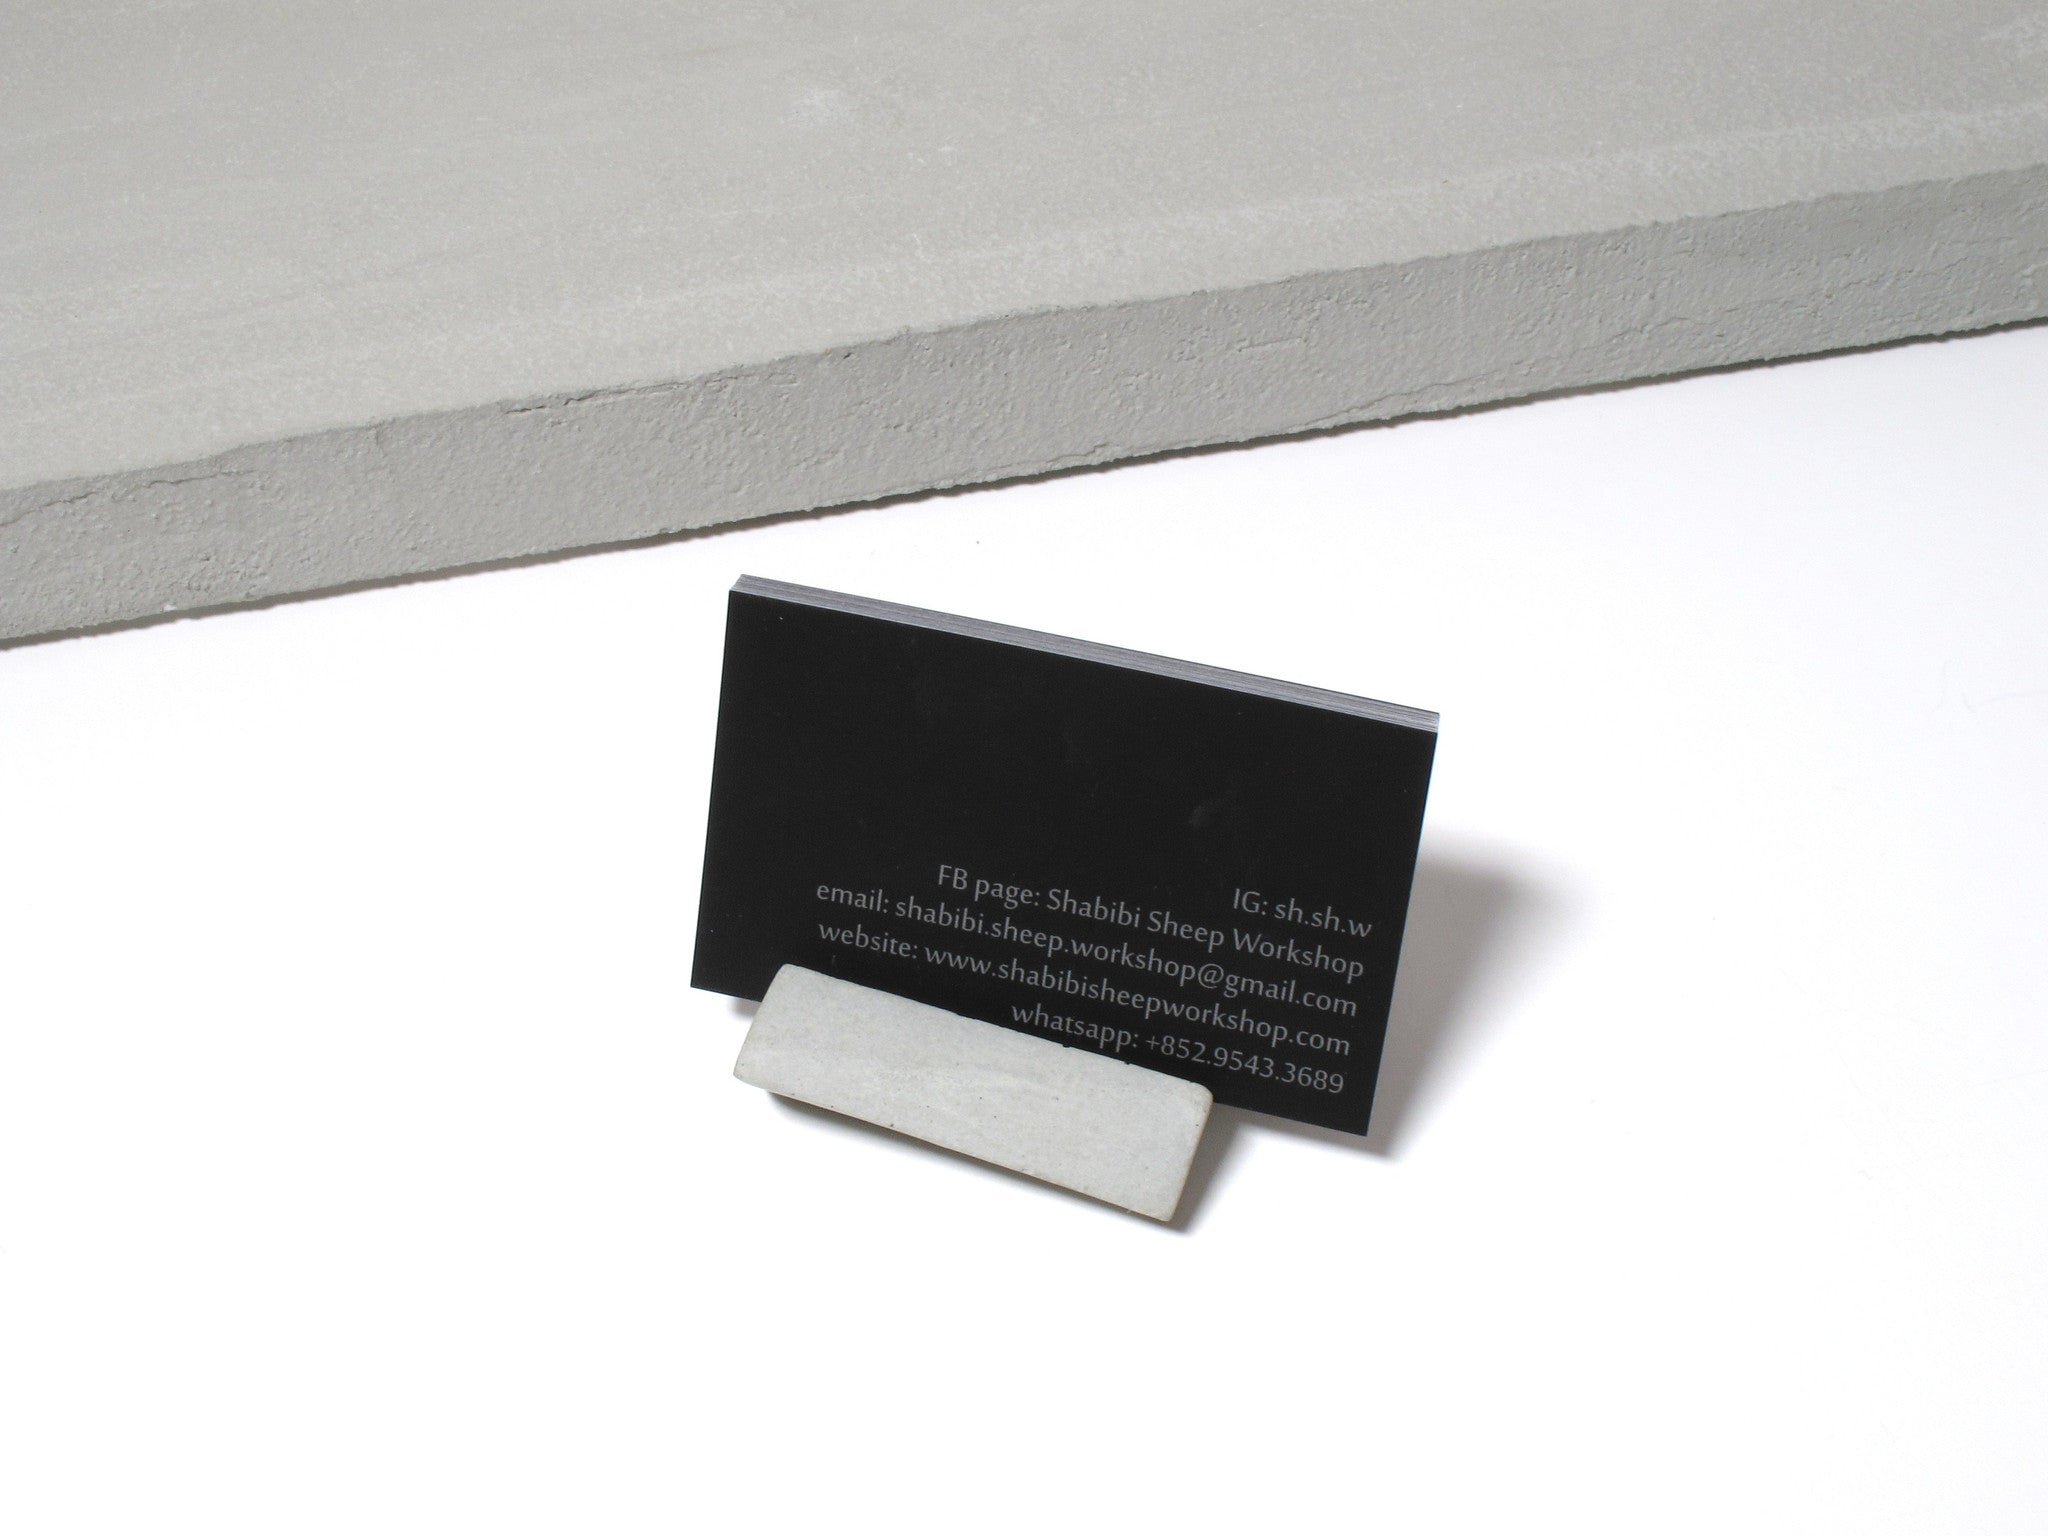 Concrete desktop business card holder (Vertical business cards) - Shabibi Sheep Workshop